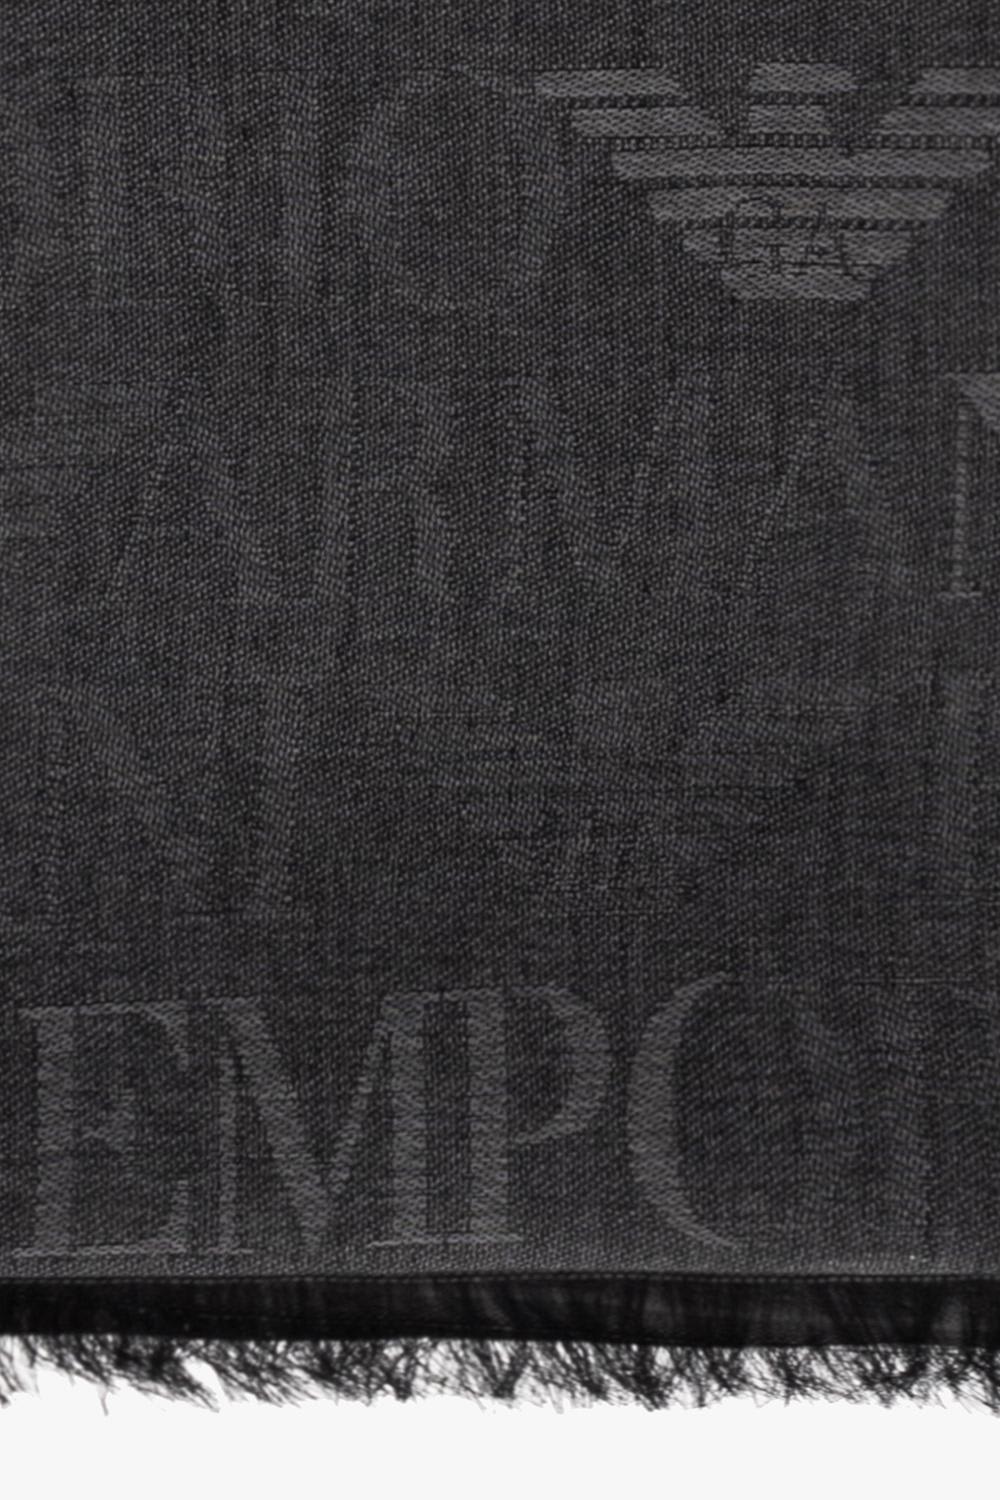 Shop Emporio Armani Scarf With Monogram In Grey